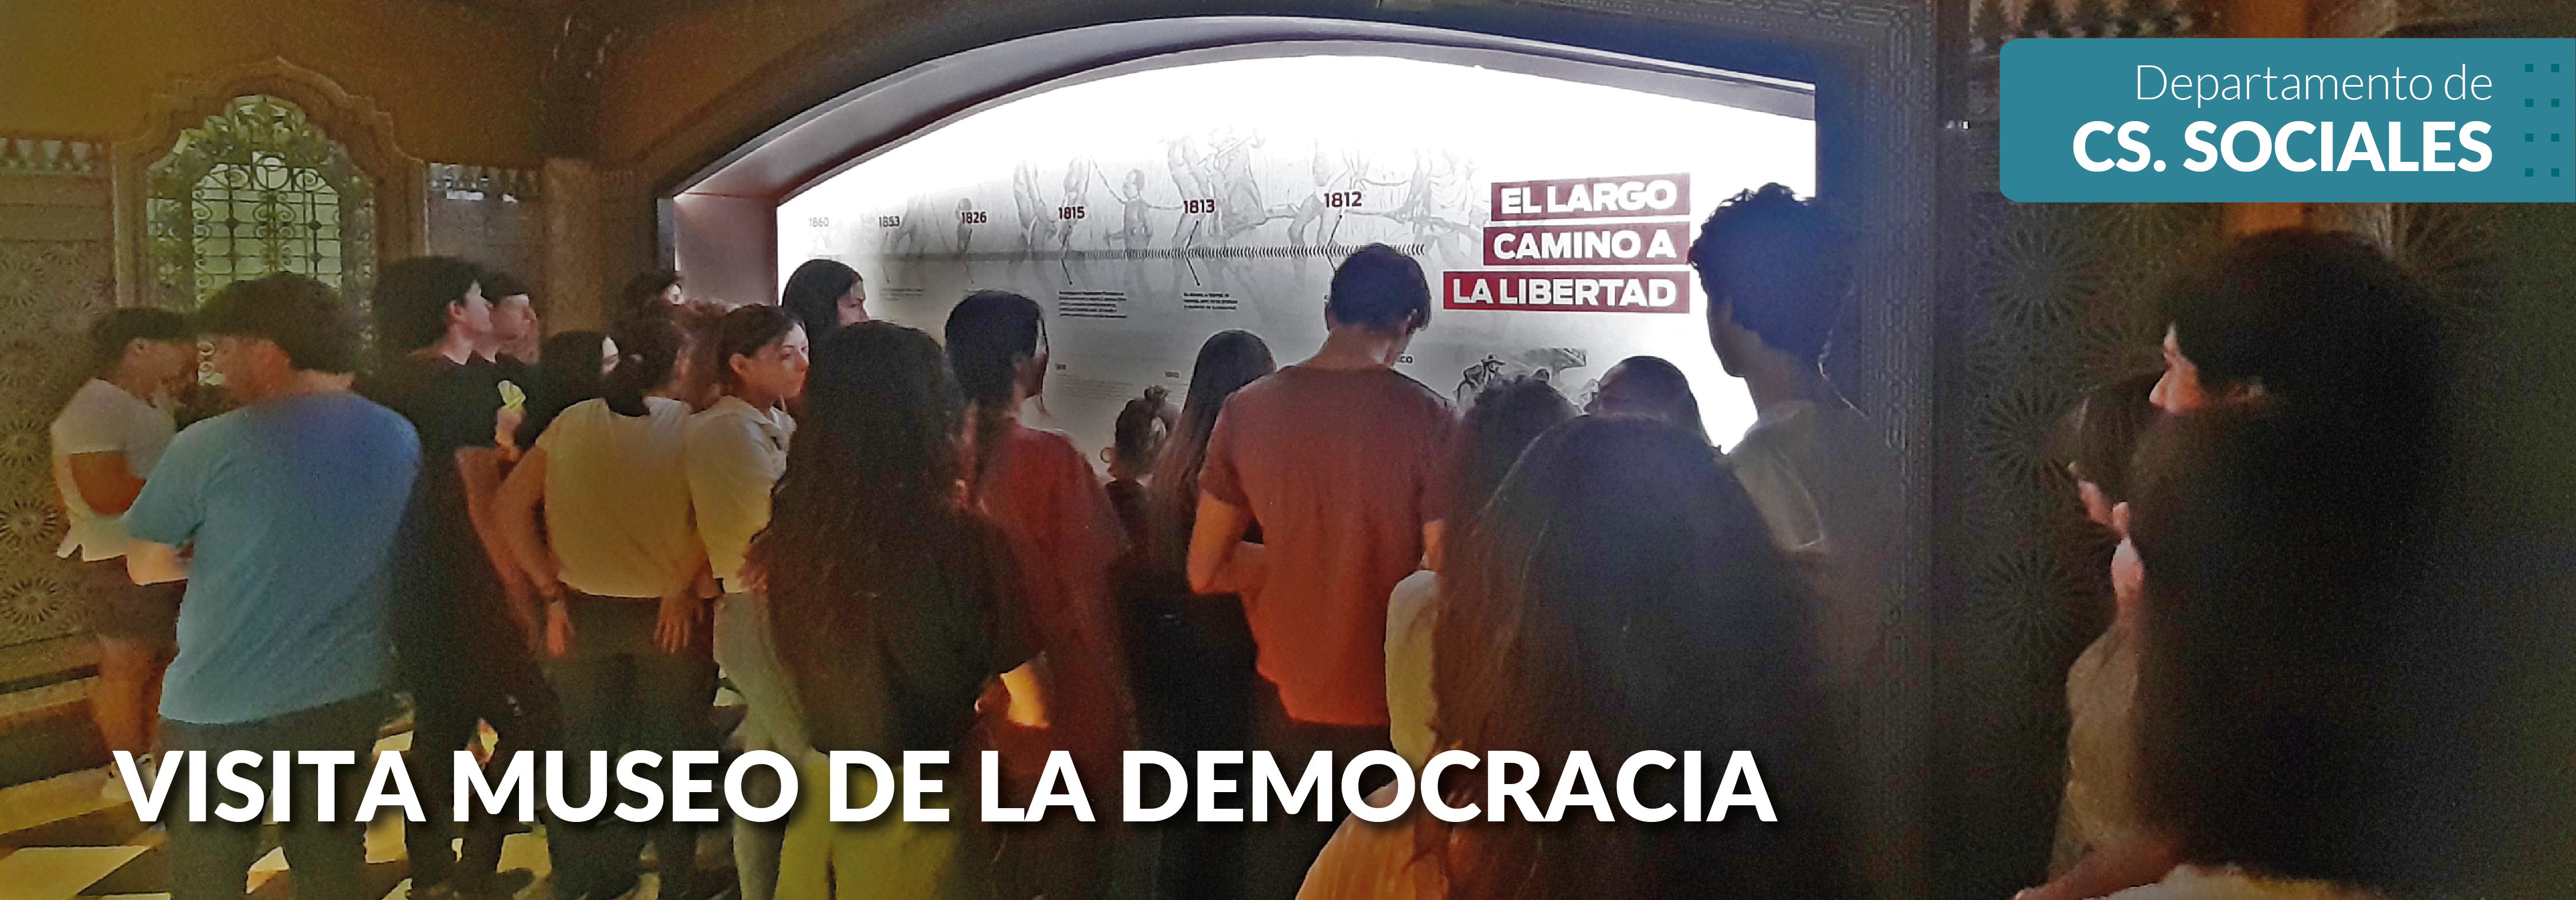 Visita al Museo de la Democracia